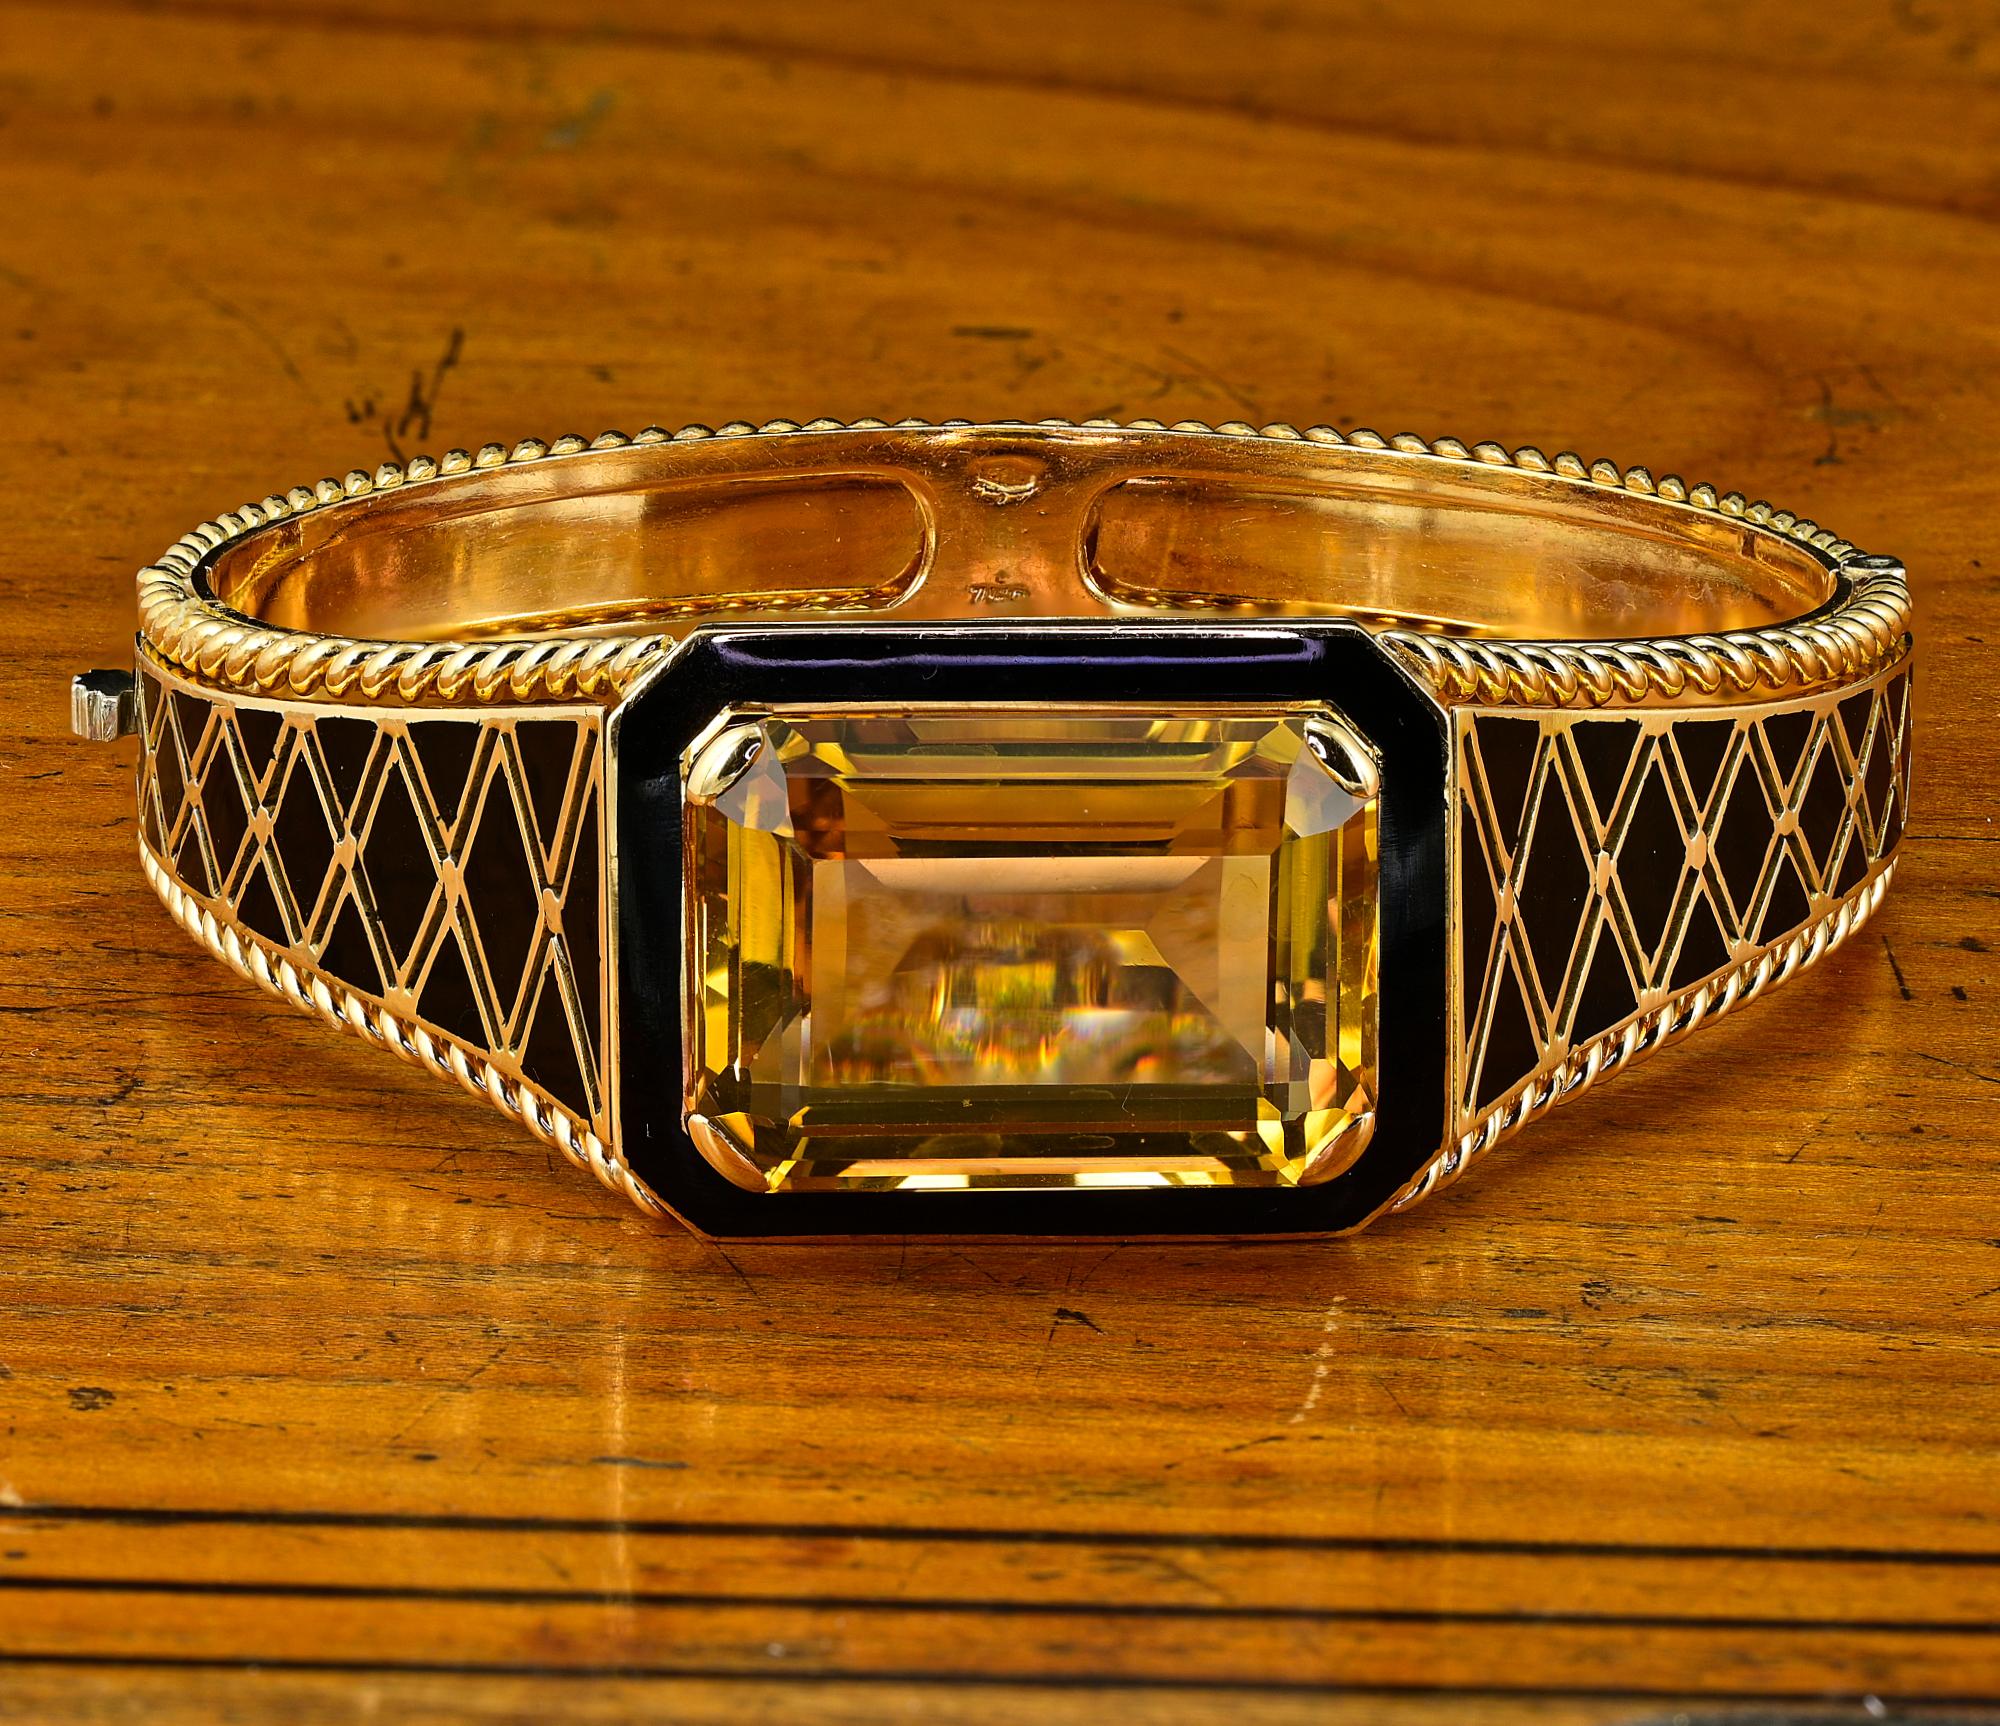 Ce superbe bracelet de style rétro date de 1935 et porte les cachets italiens de l'époque.
Majestic fait à la main en 18 KT massif, pèse 61,4 grammes.
Il fait face à la citrine naturelle centrale d'un poids connu de 33,80 ct (23,34 x 17,63 mm) -